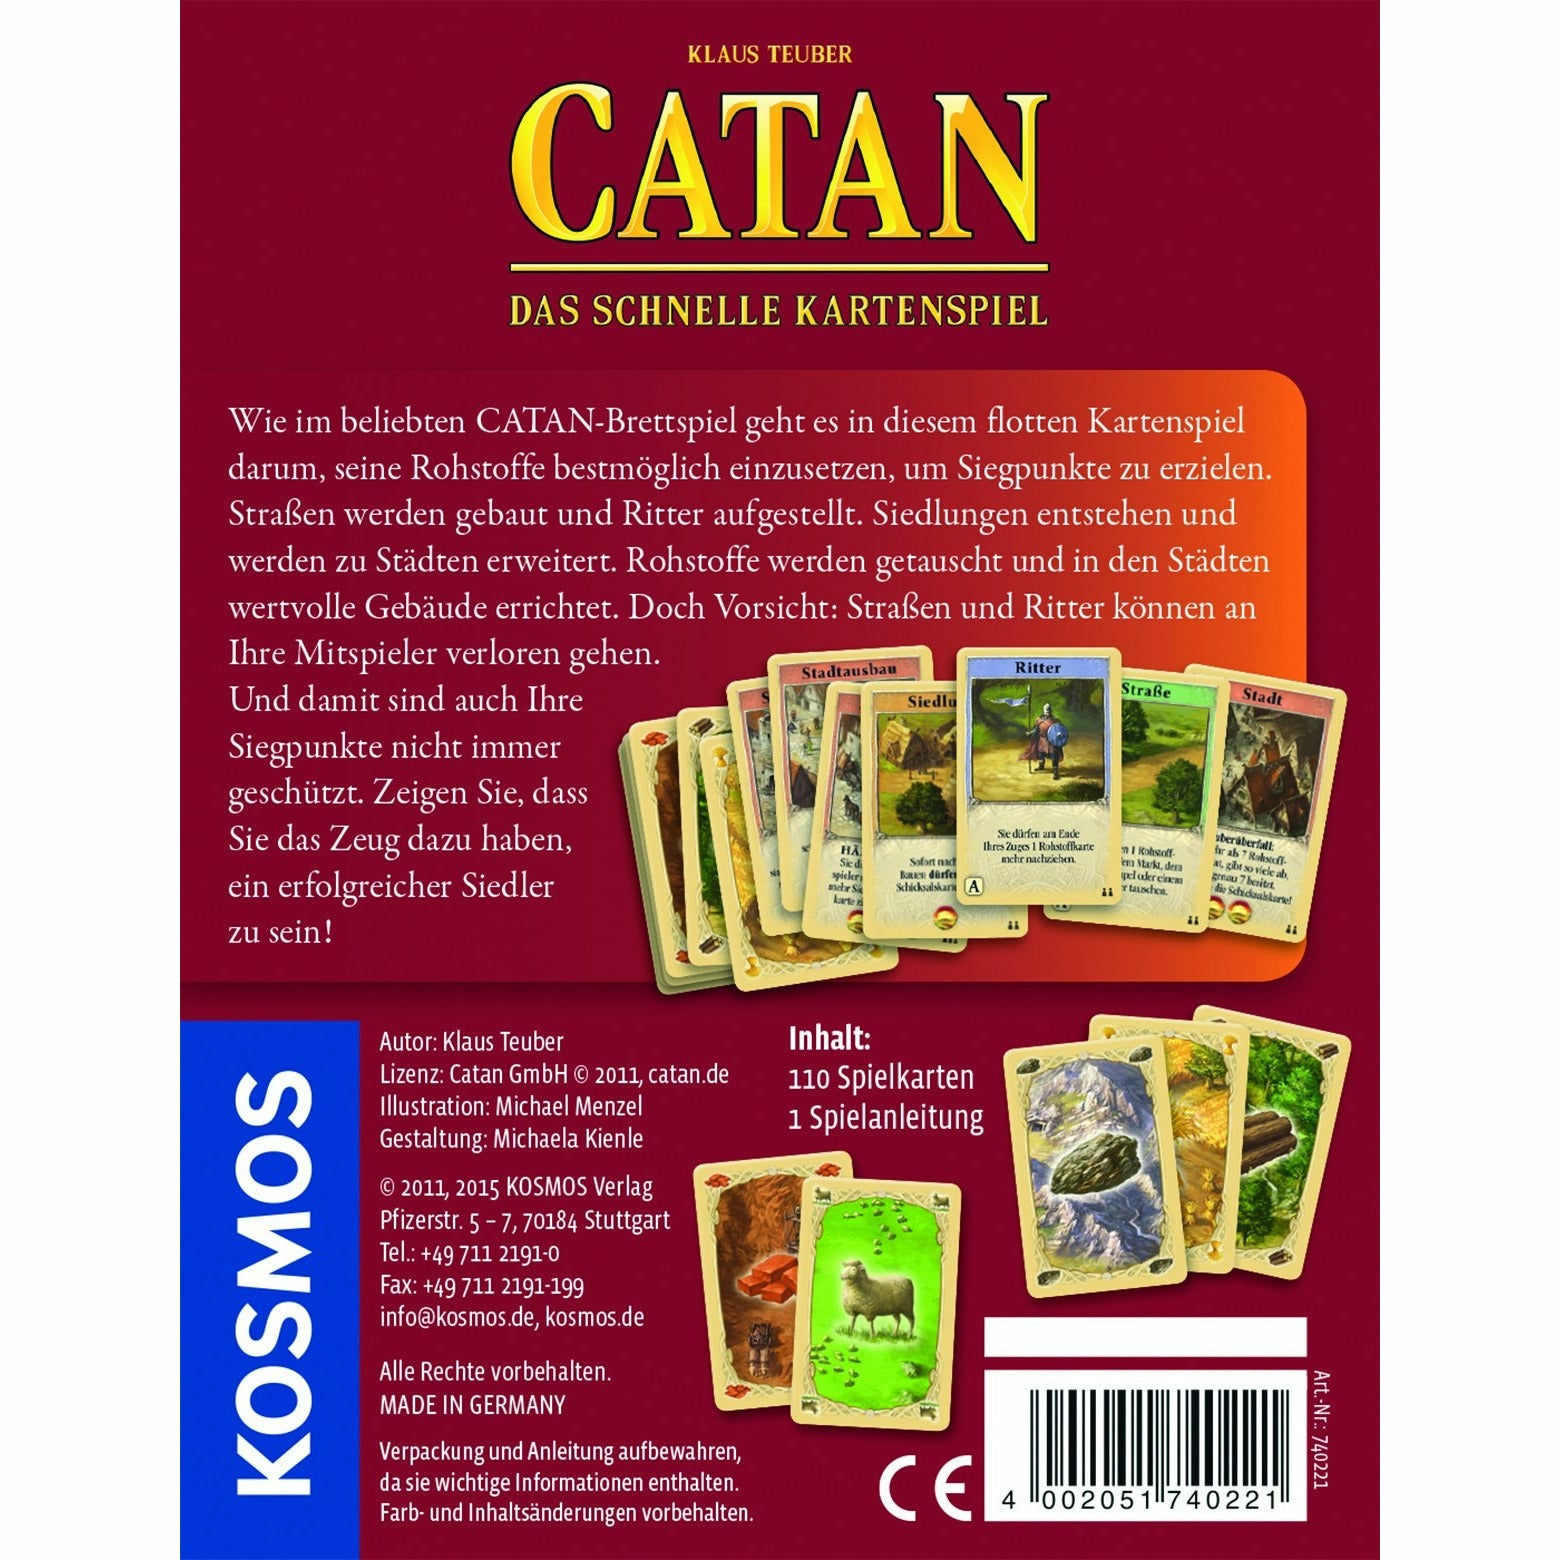 KOSMOS | Catan - Das schnelle Kartenspiel